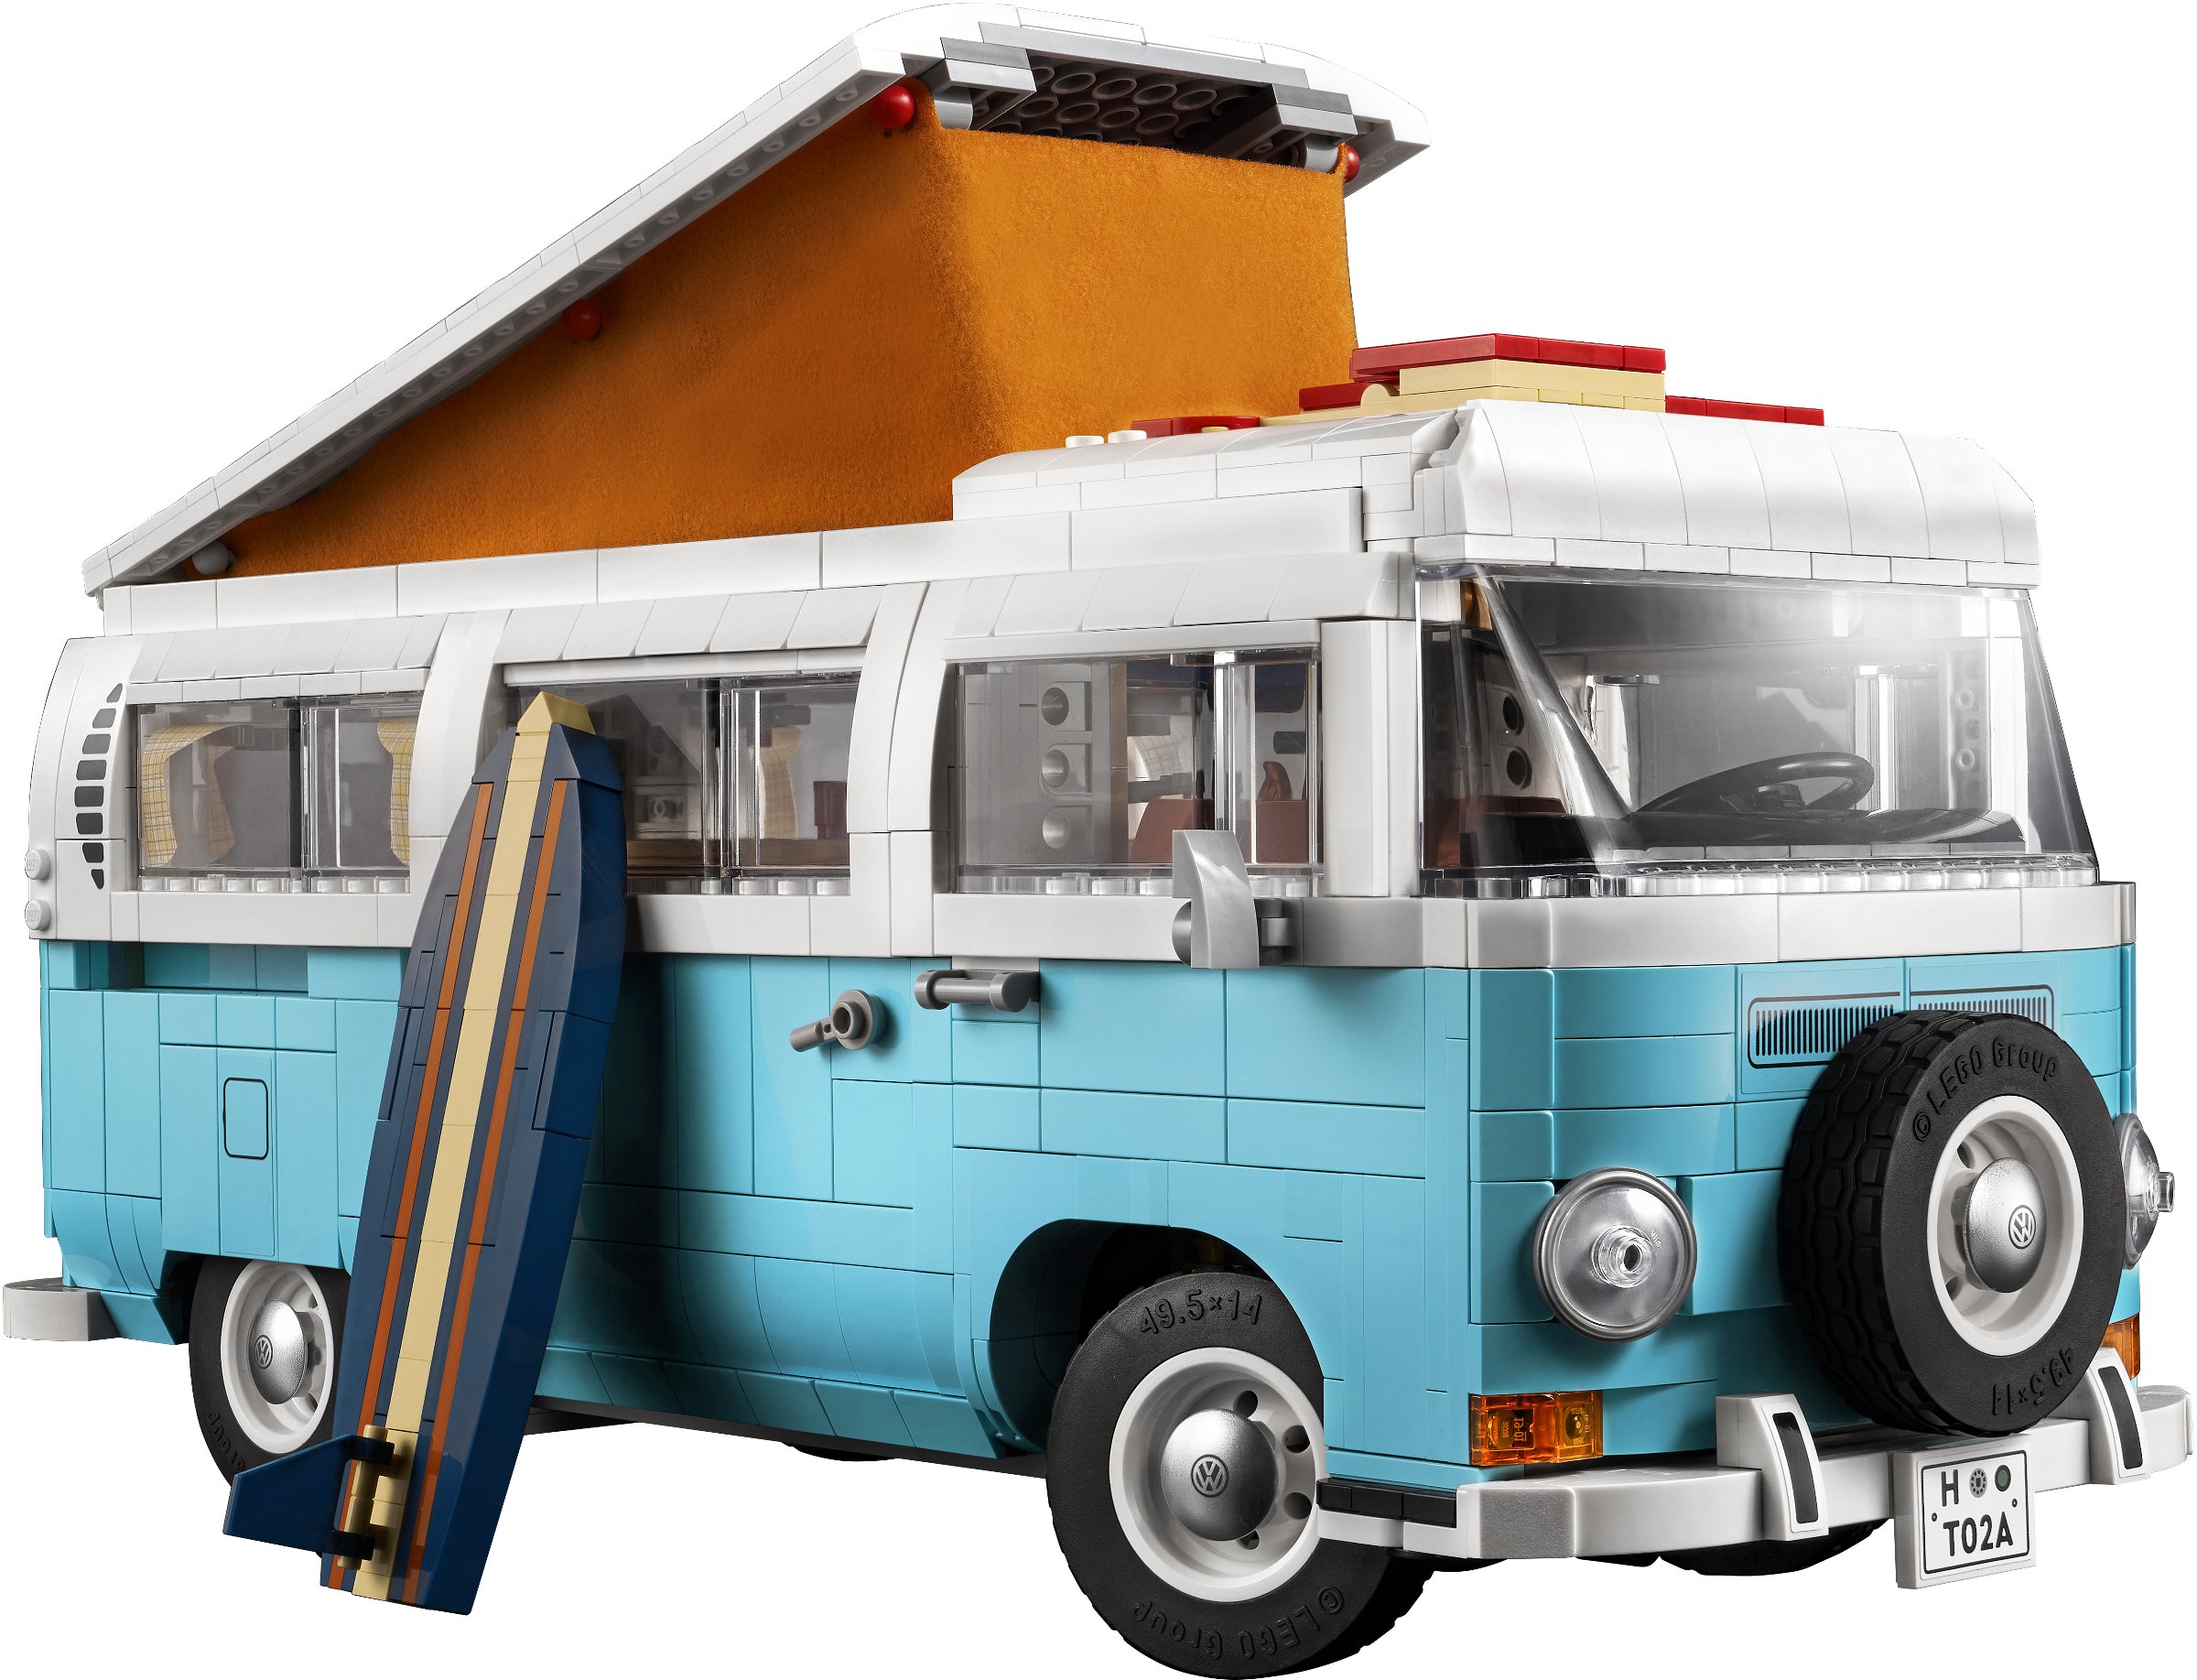 hypotheek Overweldigend Achtervoegsel Volkswagen T2 Camper Van revealed! | Brickset: LEGO set guide and database